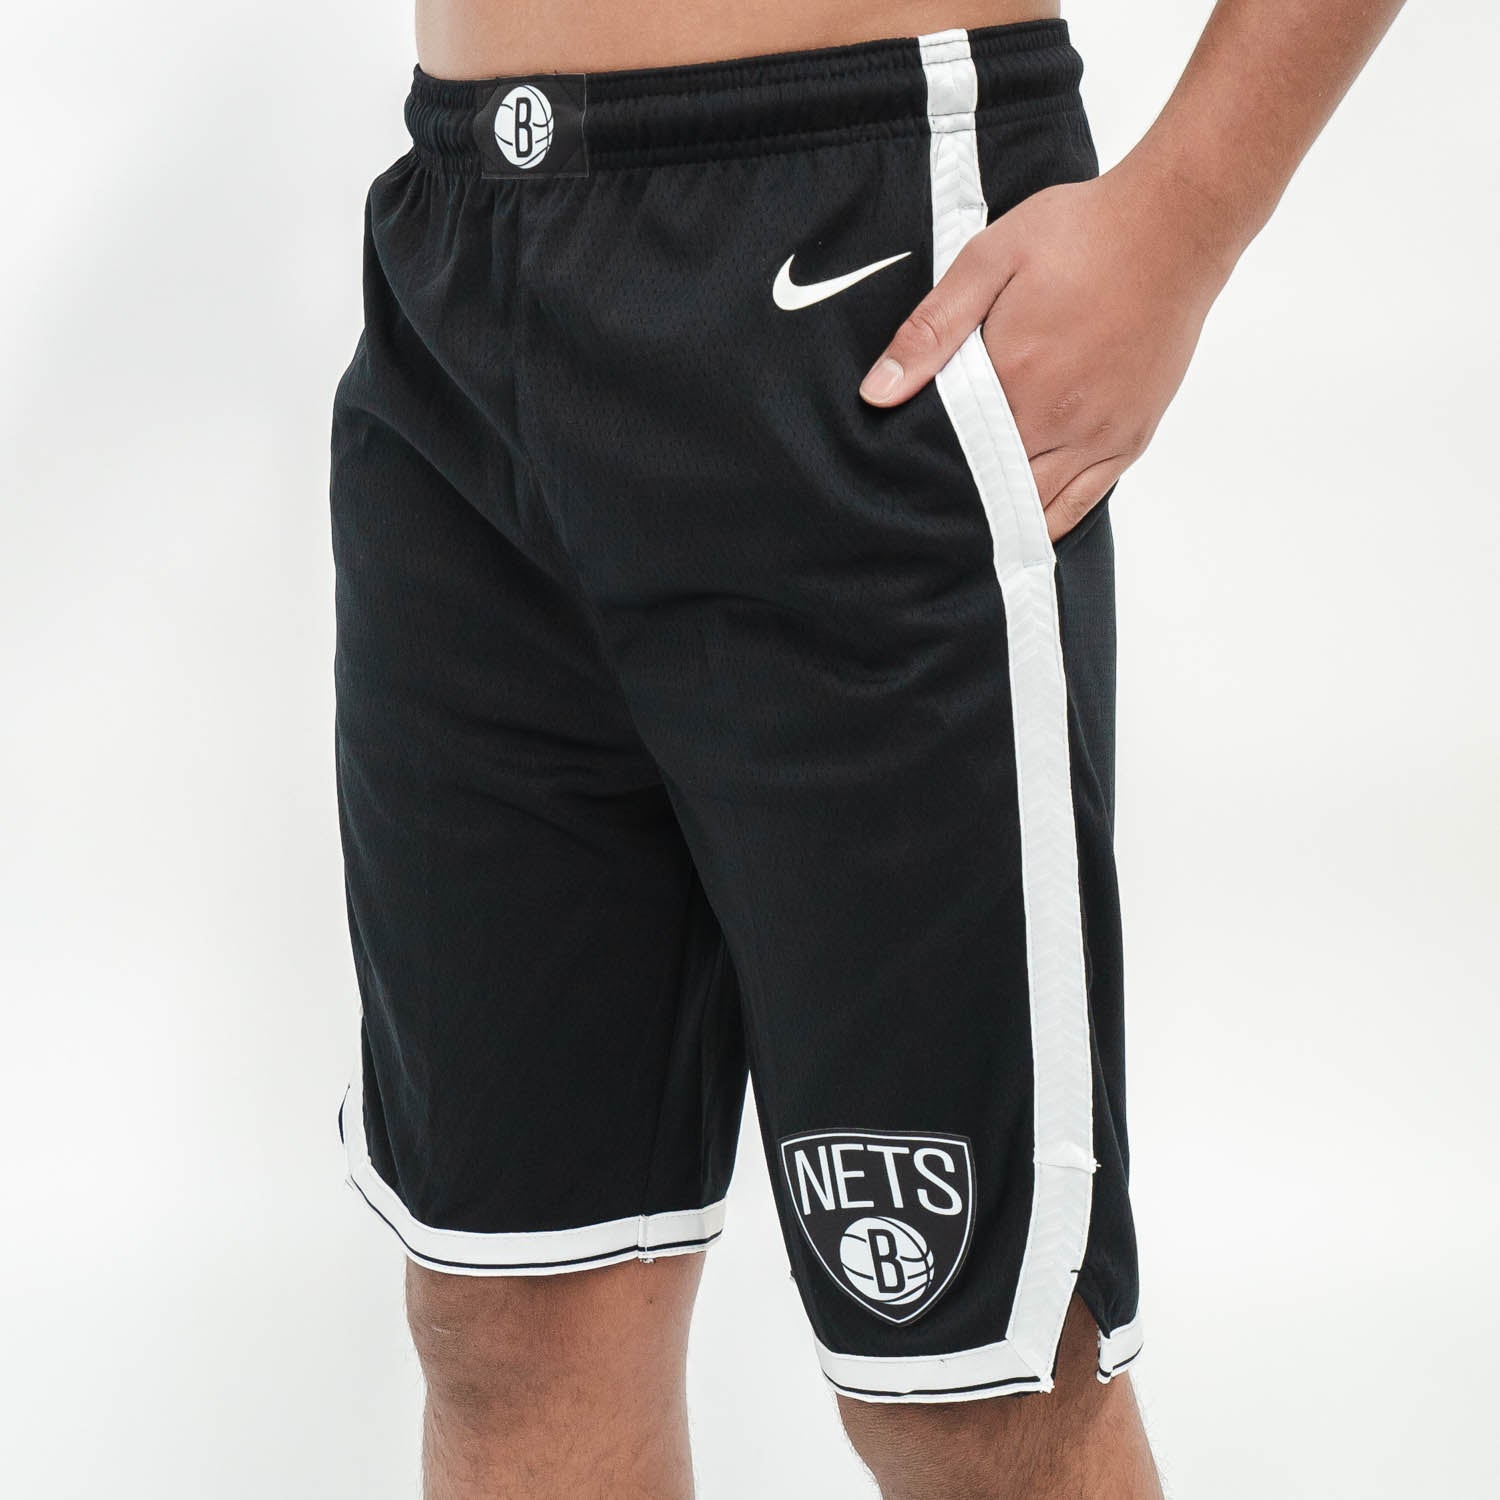 REALLY GOOD DEAL!!! Brooklyn Net Nike Swingman Shorts for $33